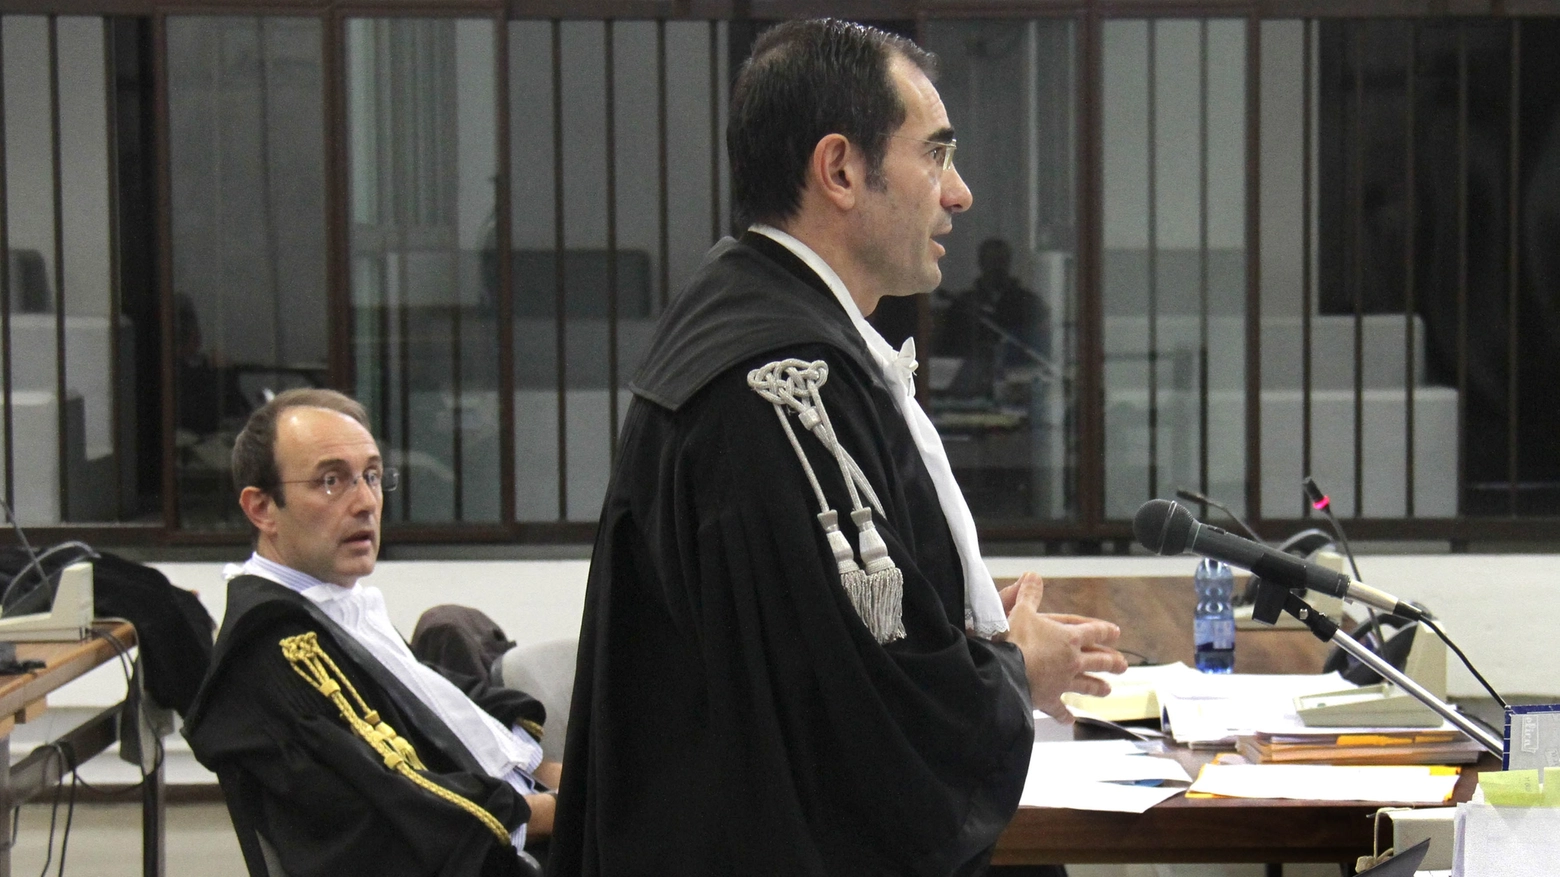 Processo Orefice: il pubblico ministero Claudio Curreli e l'avvocato Guido Tesi (Newpressphoto)